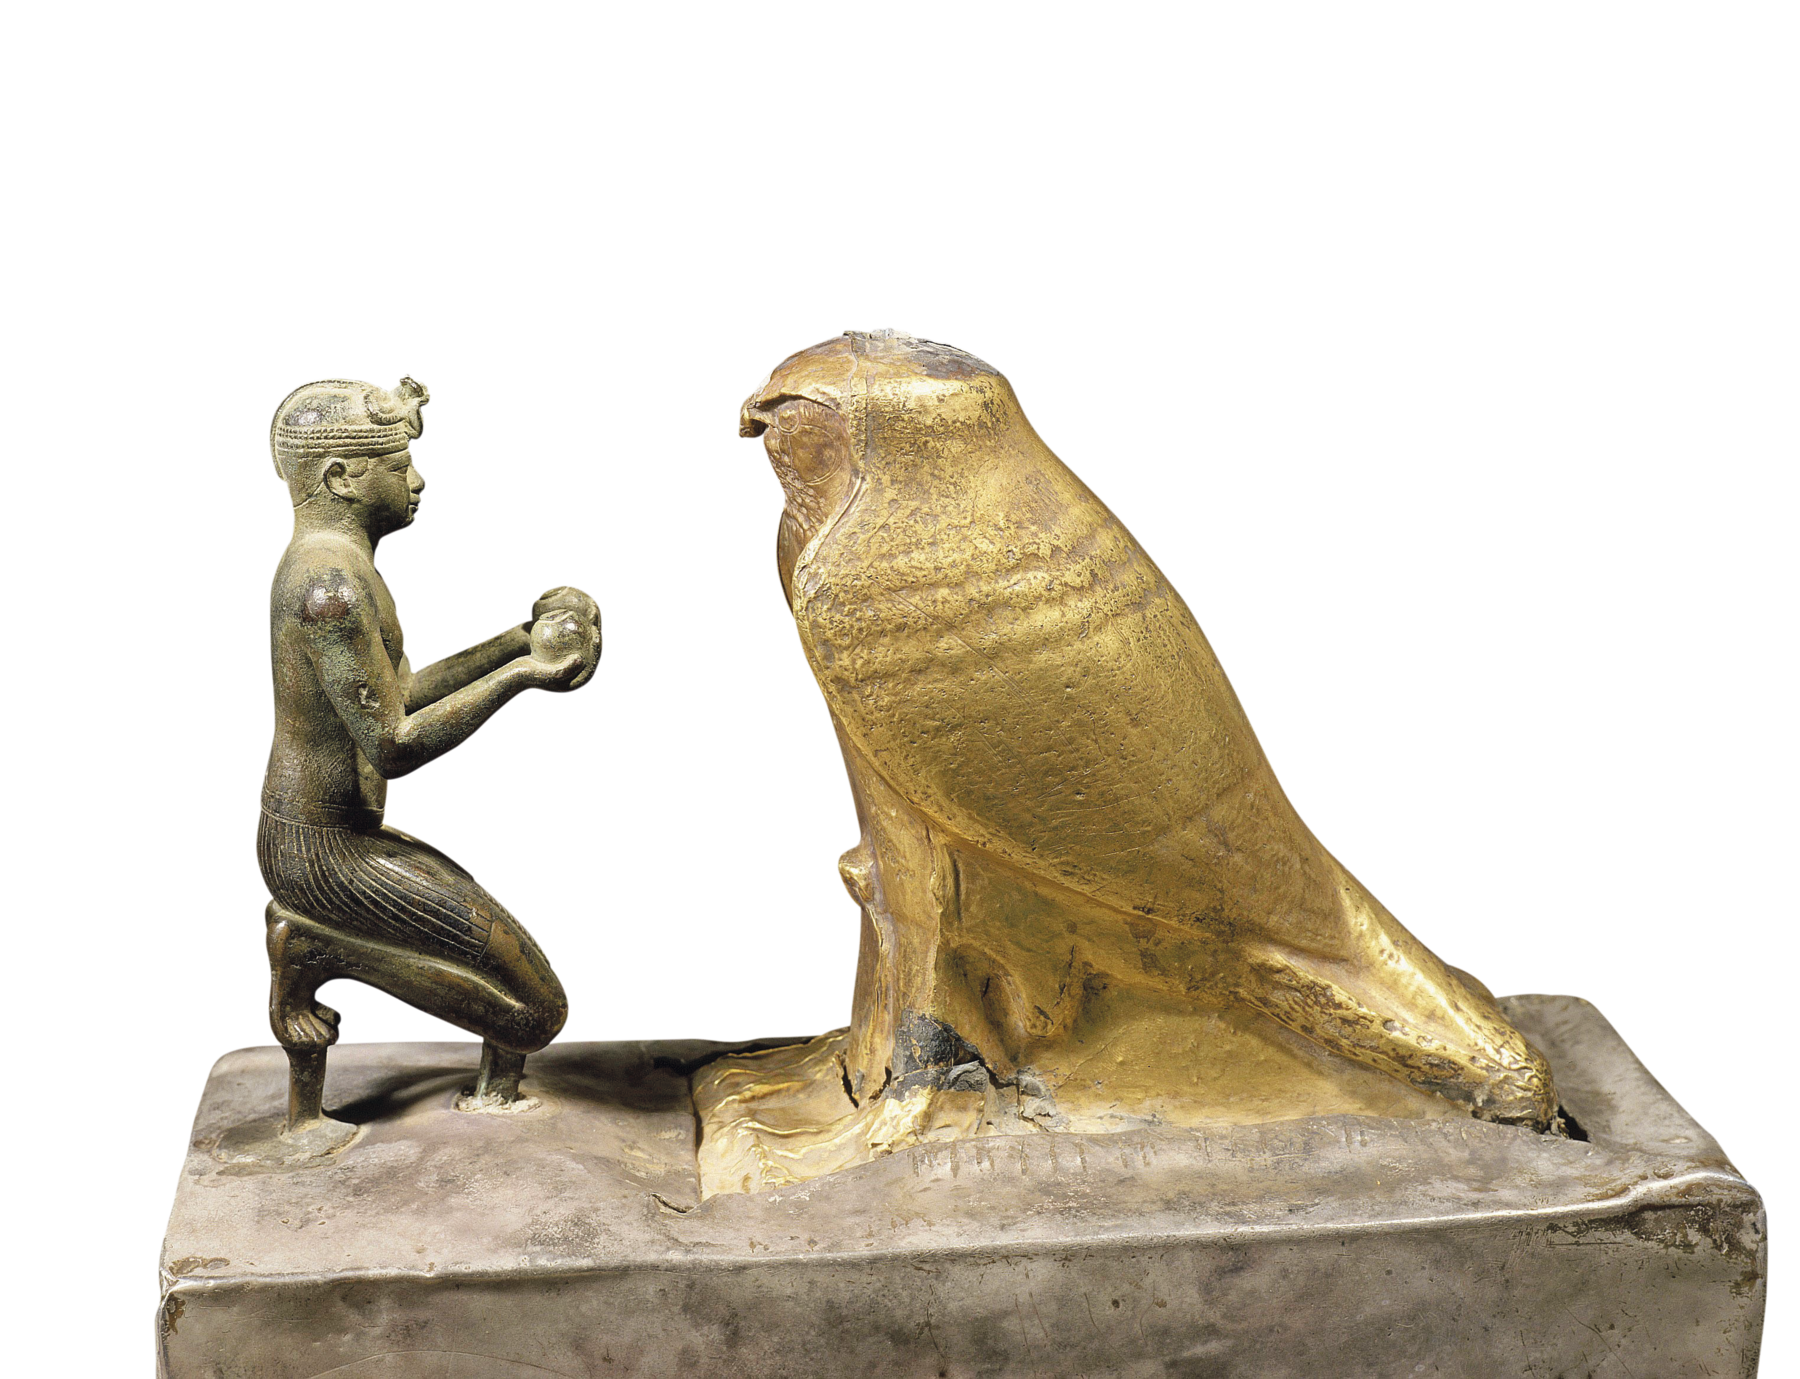 Estatueta. Escultura metálica representando um homem ajoelhado, segurando objetos redondos com as mãos, em direção a um grande falcão dourado a sua frente.